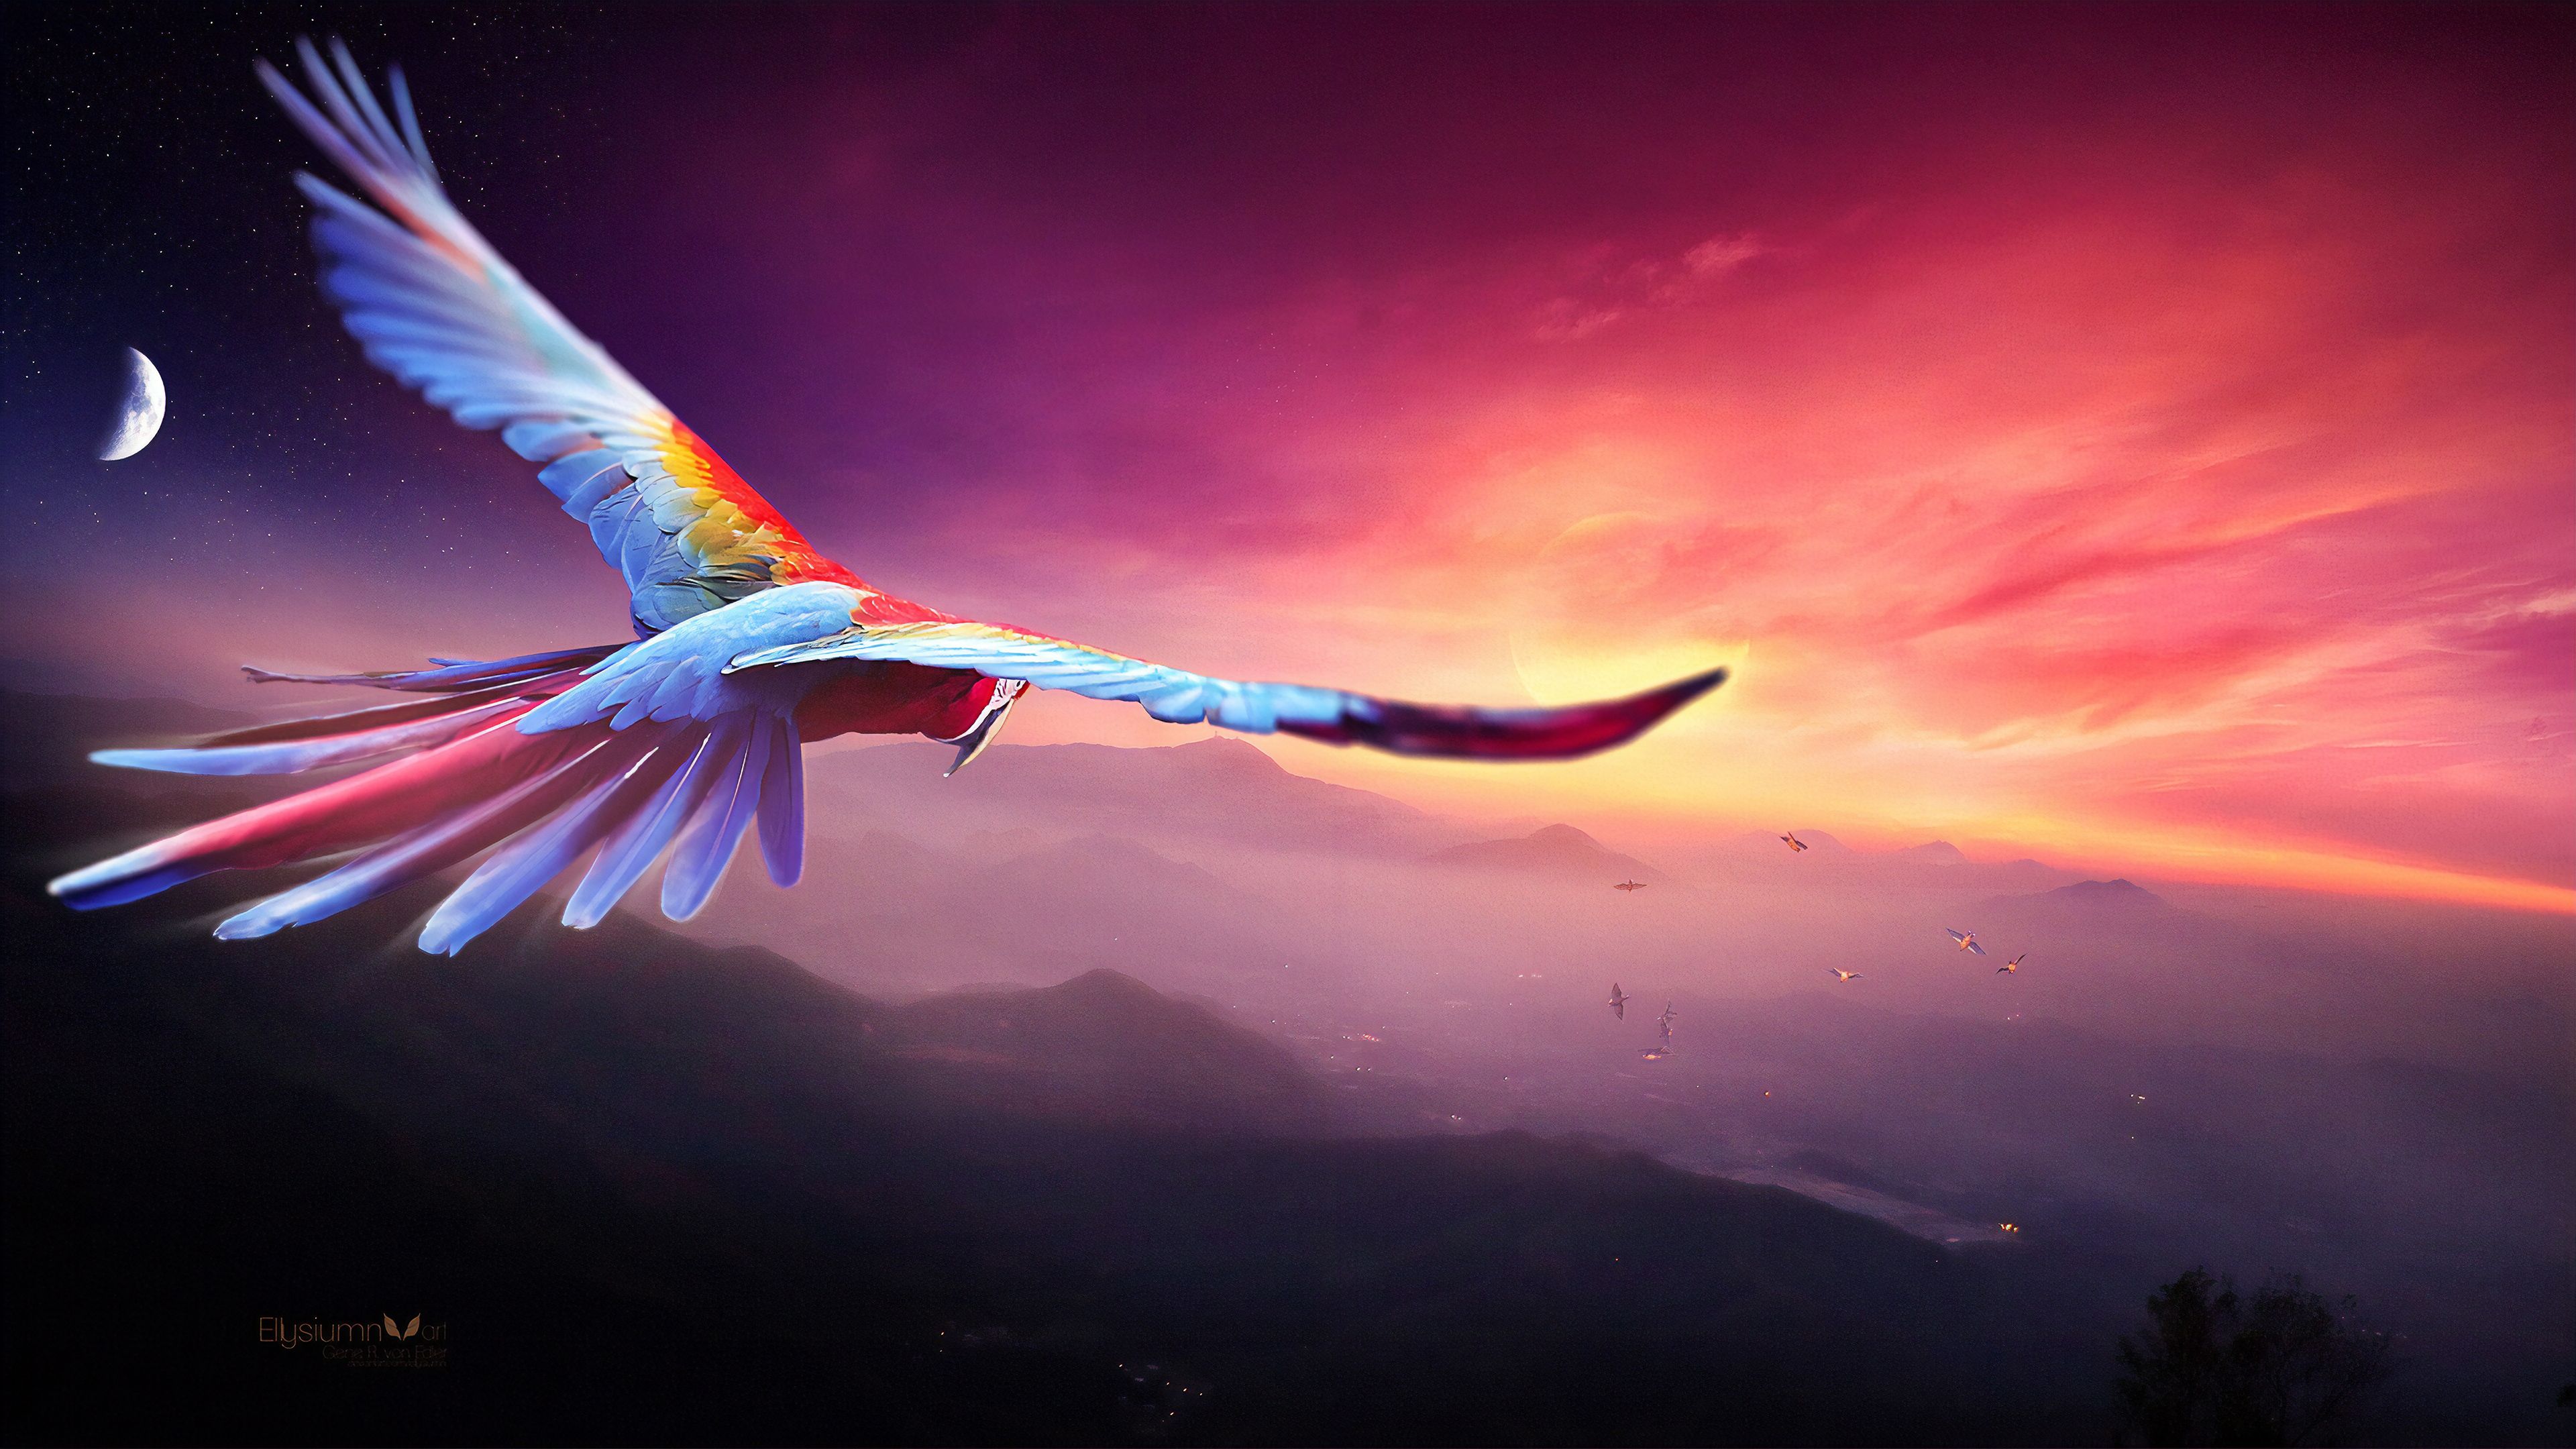 زیباترین نقاشی دیجیتالی از پرواز طوطی ماکائو در غروب سرخ خورشید